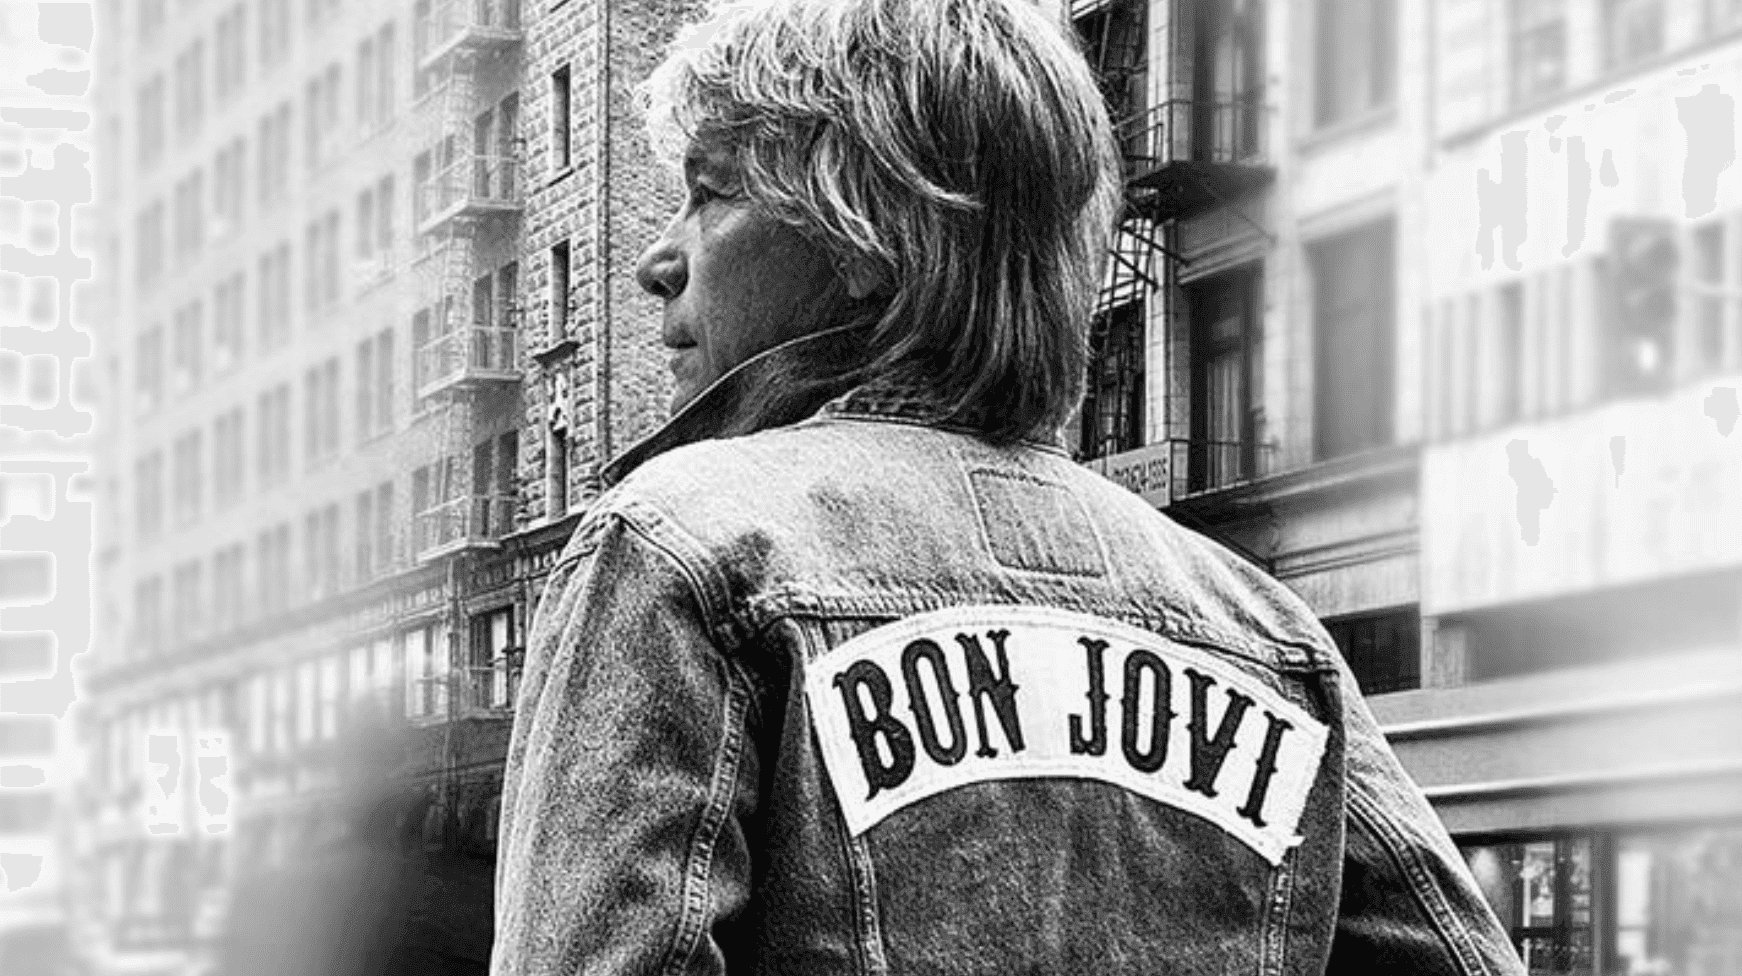 Jon Bon Jovi criticized for apparent autopen signatures